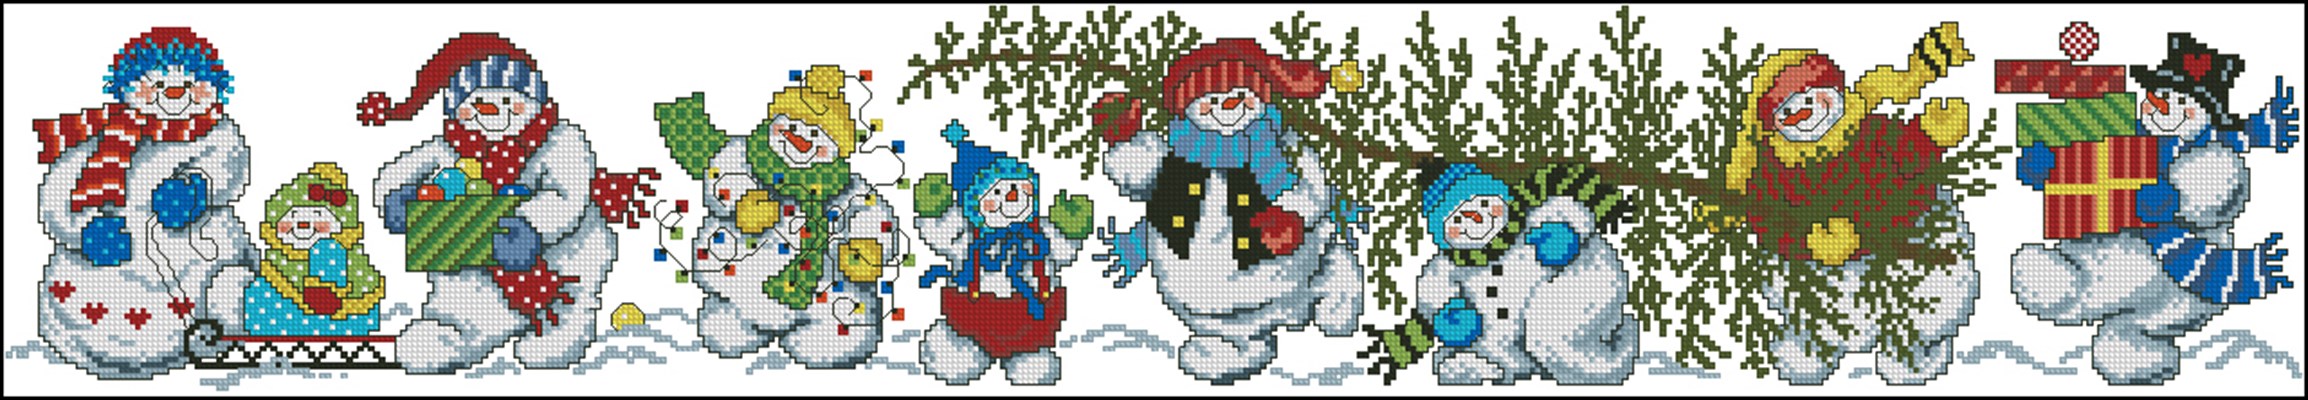 Snowman With Trees вышивка крестом